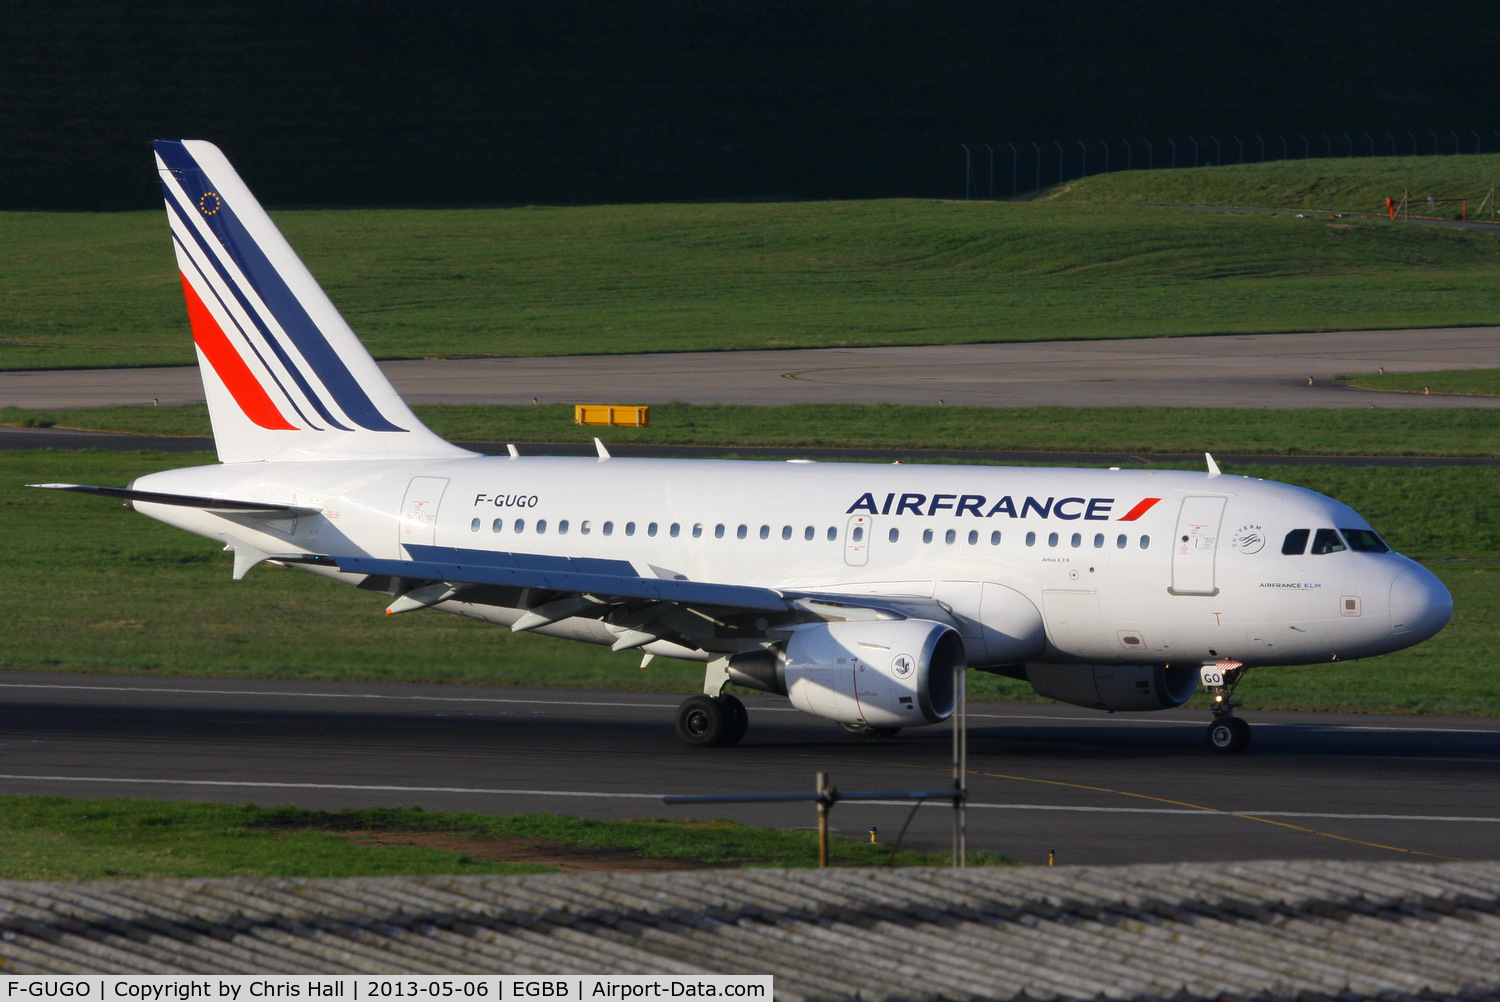 F-GUGO, 2006 Airbus A318-111 C/N 2951, Air France